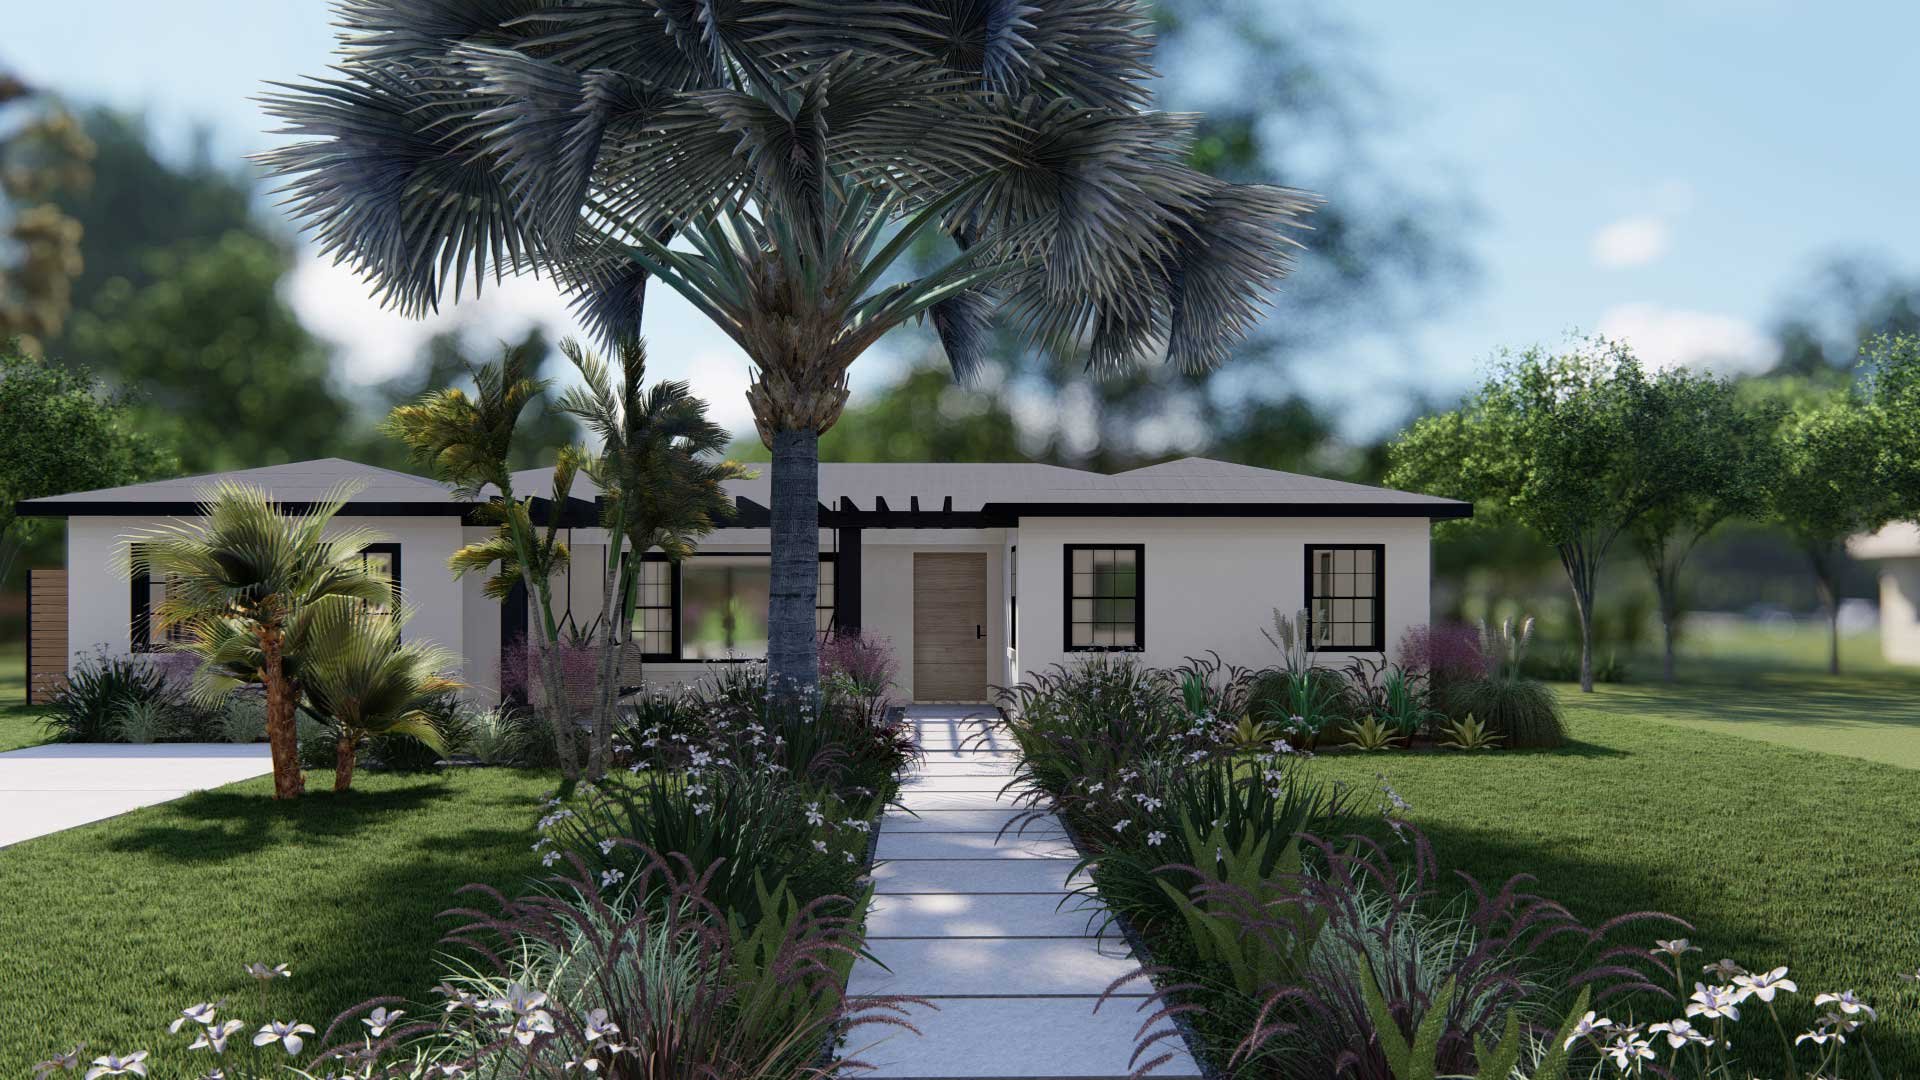 手掌、蕨类植物和多年生植物创造一个轻松的热带环境补充一个新的黑绿廊和复苏的户外生活空间在一个低矮的平房院子里。